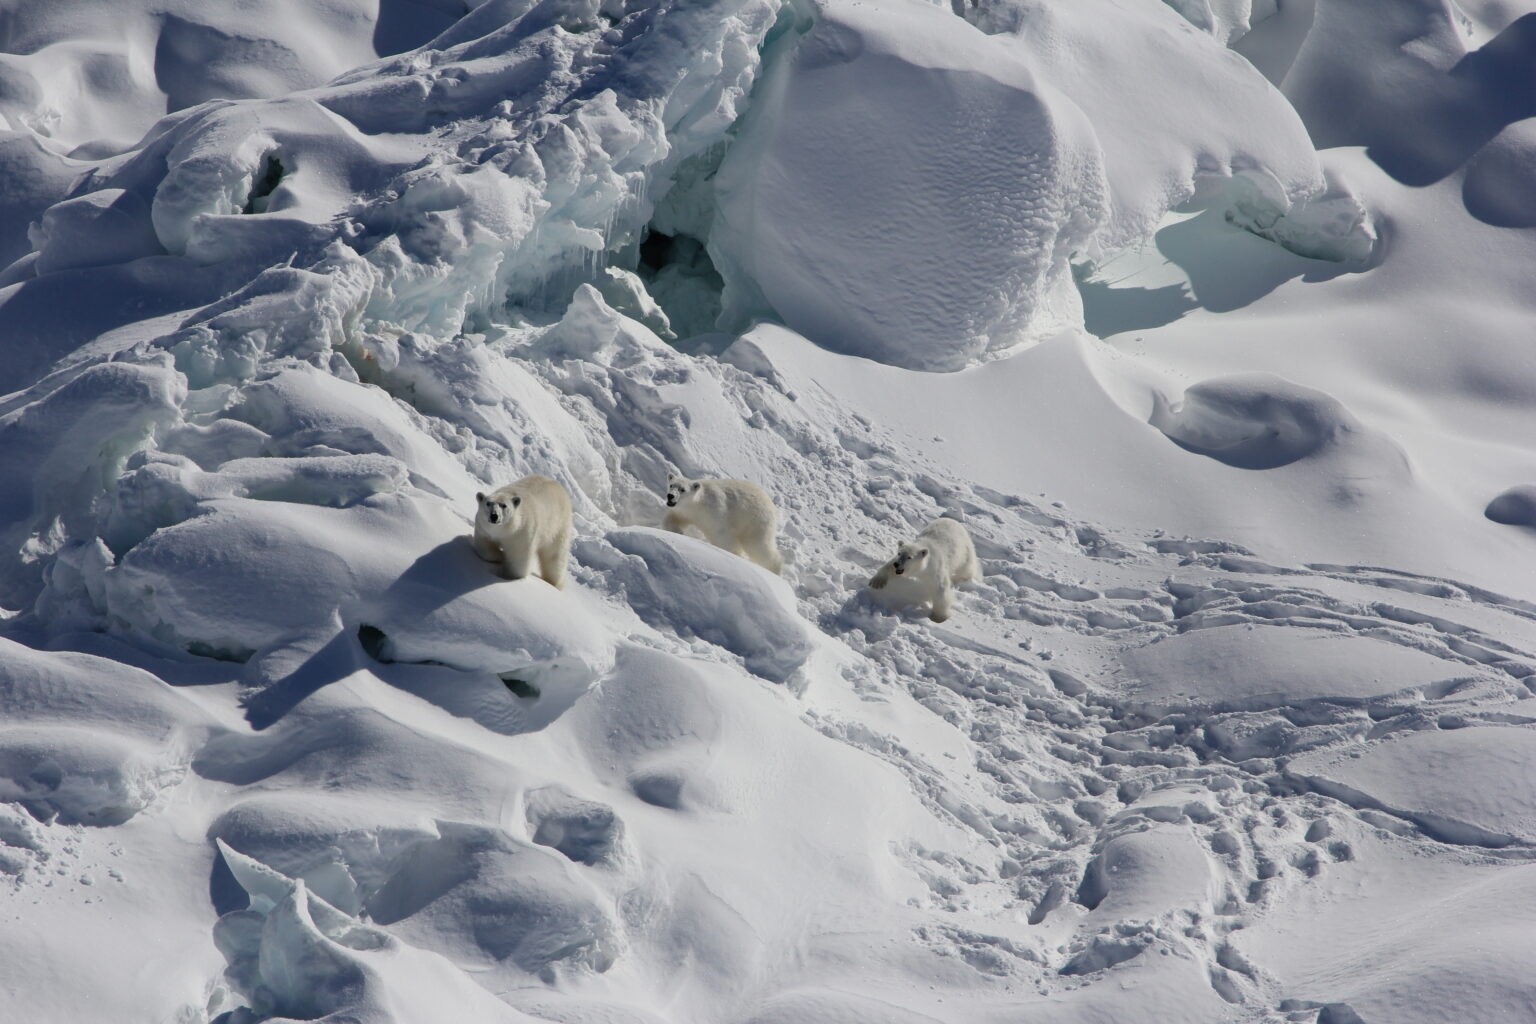 Ursa polar adulta (à esquerda) e dois filhotes de 1 ano caminham sobre o gelo de uma geleira de água doce coberta de neve no sudeste da Groenlândia em março de 2015 (Foto: Kristin Laidre/Universidade de Washington)